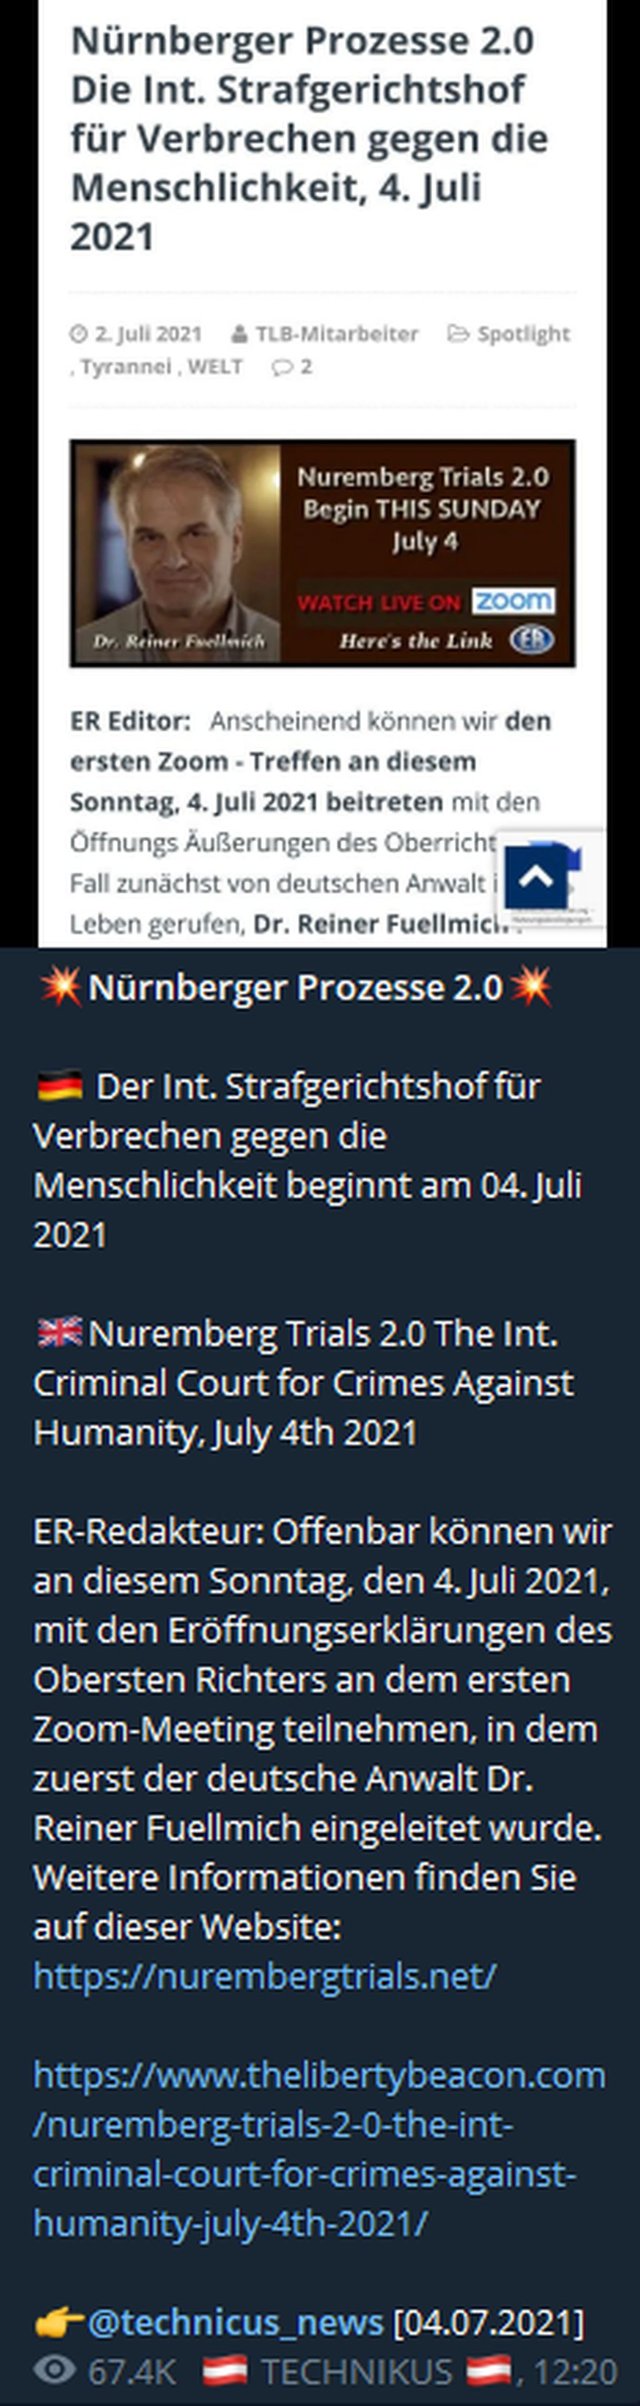 Nürnberger Prozesse 2.0.jpg